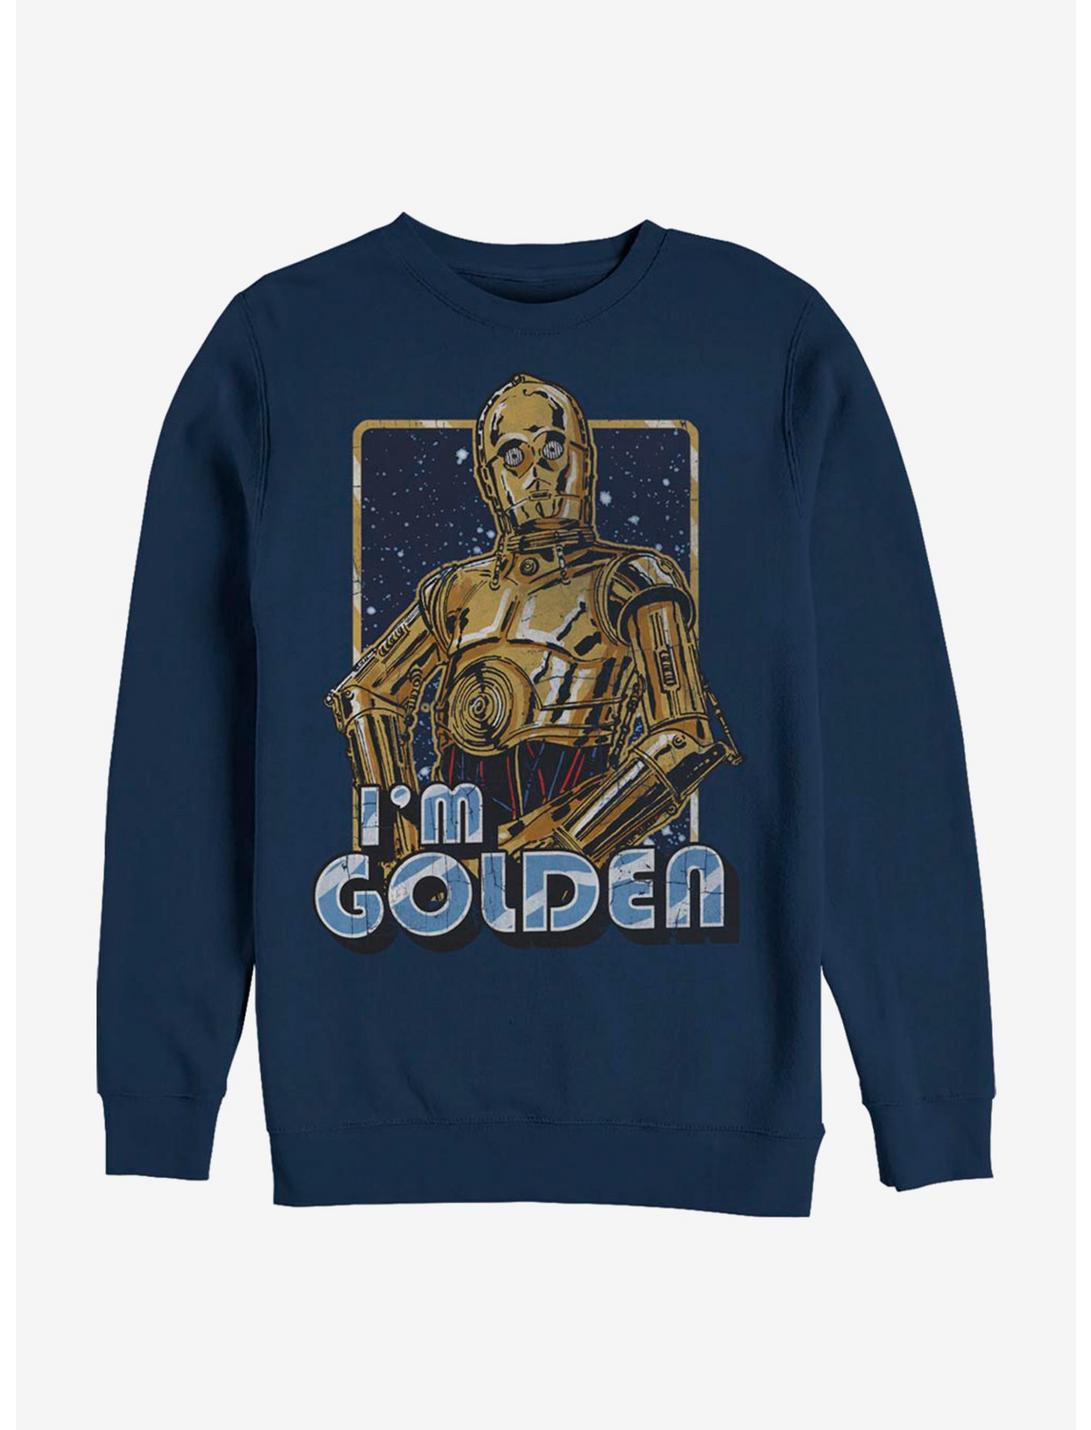 Star Wars Golden C-3PO Sweatshirt, NAVY, hi-res